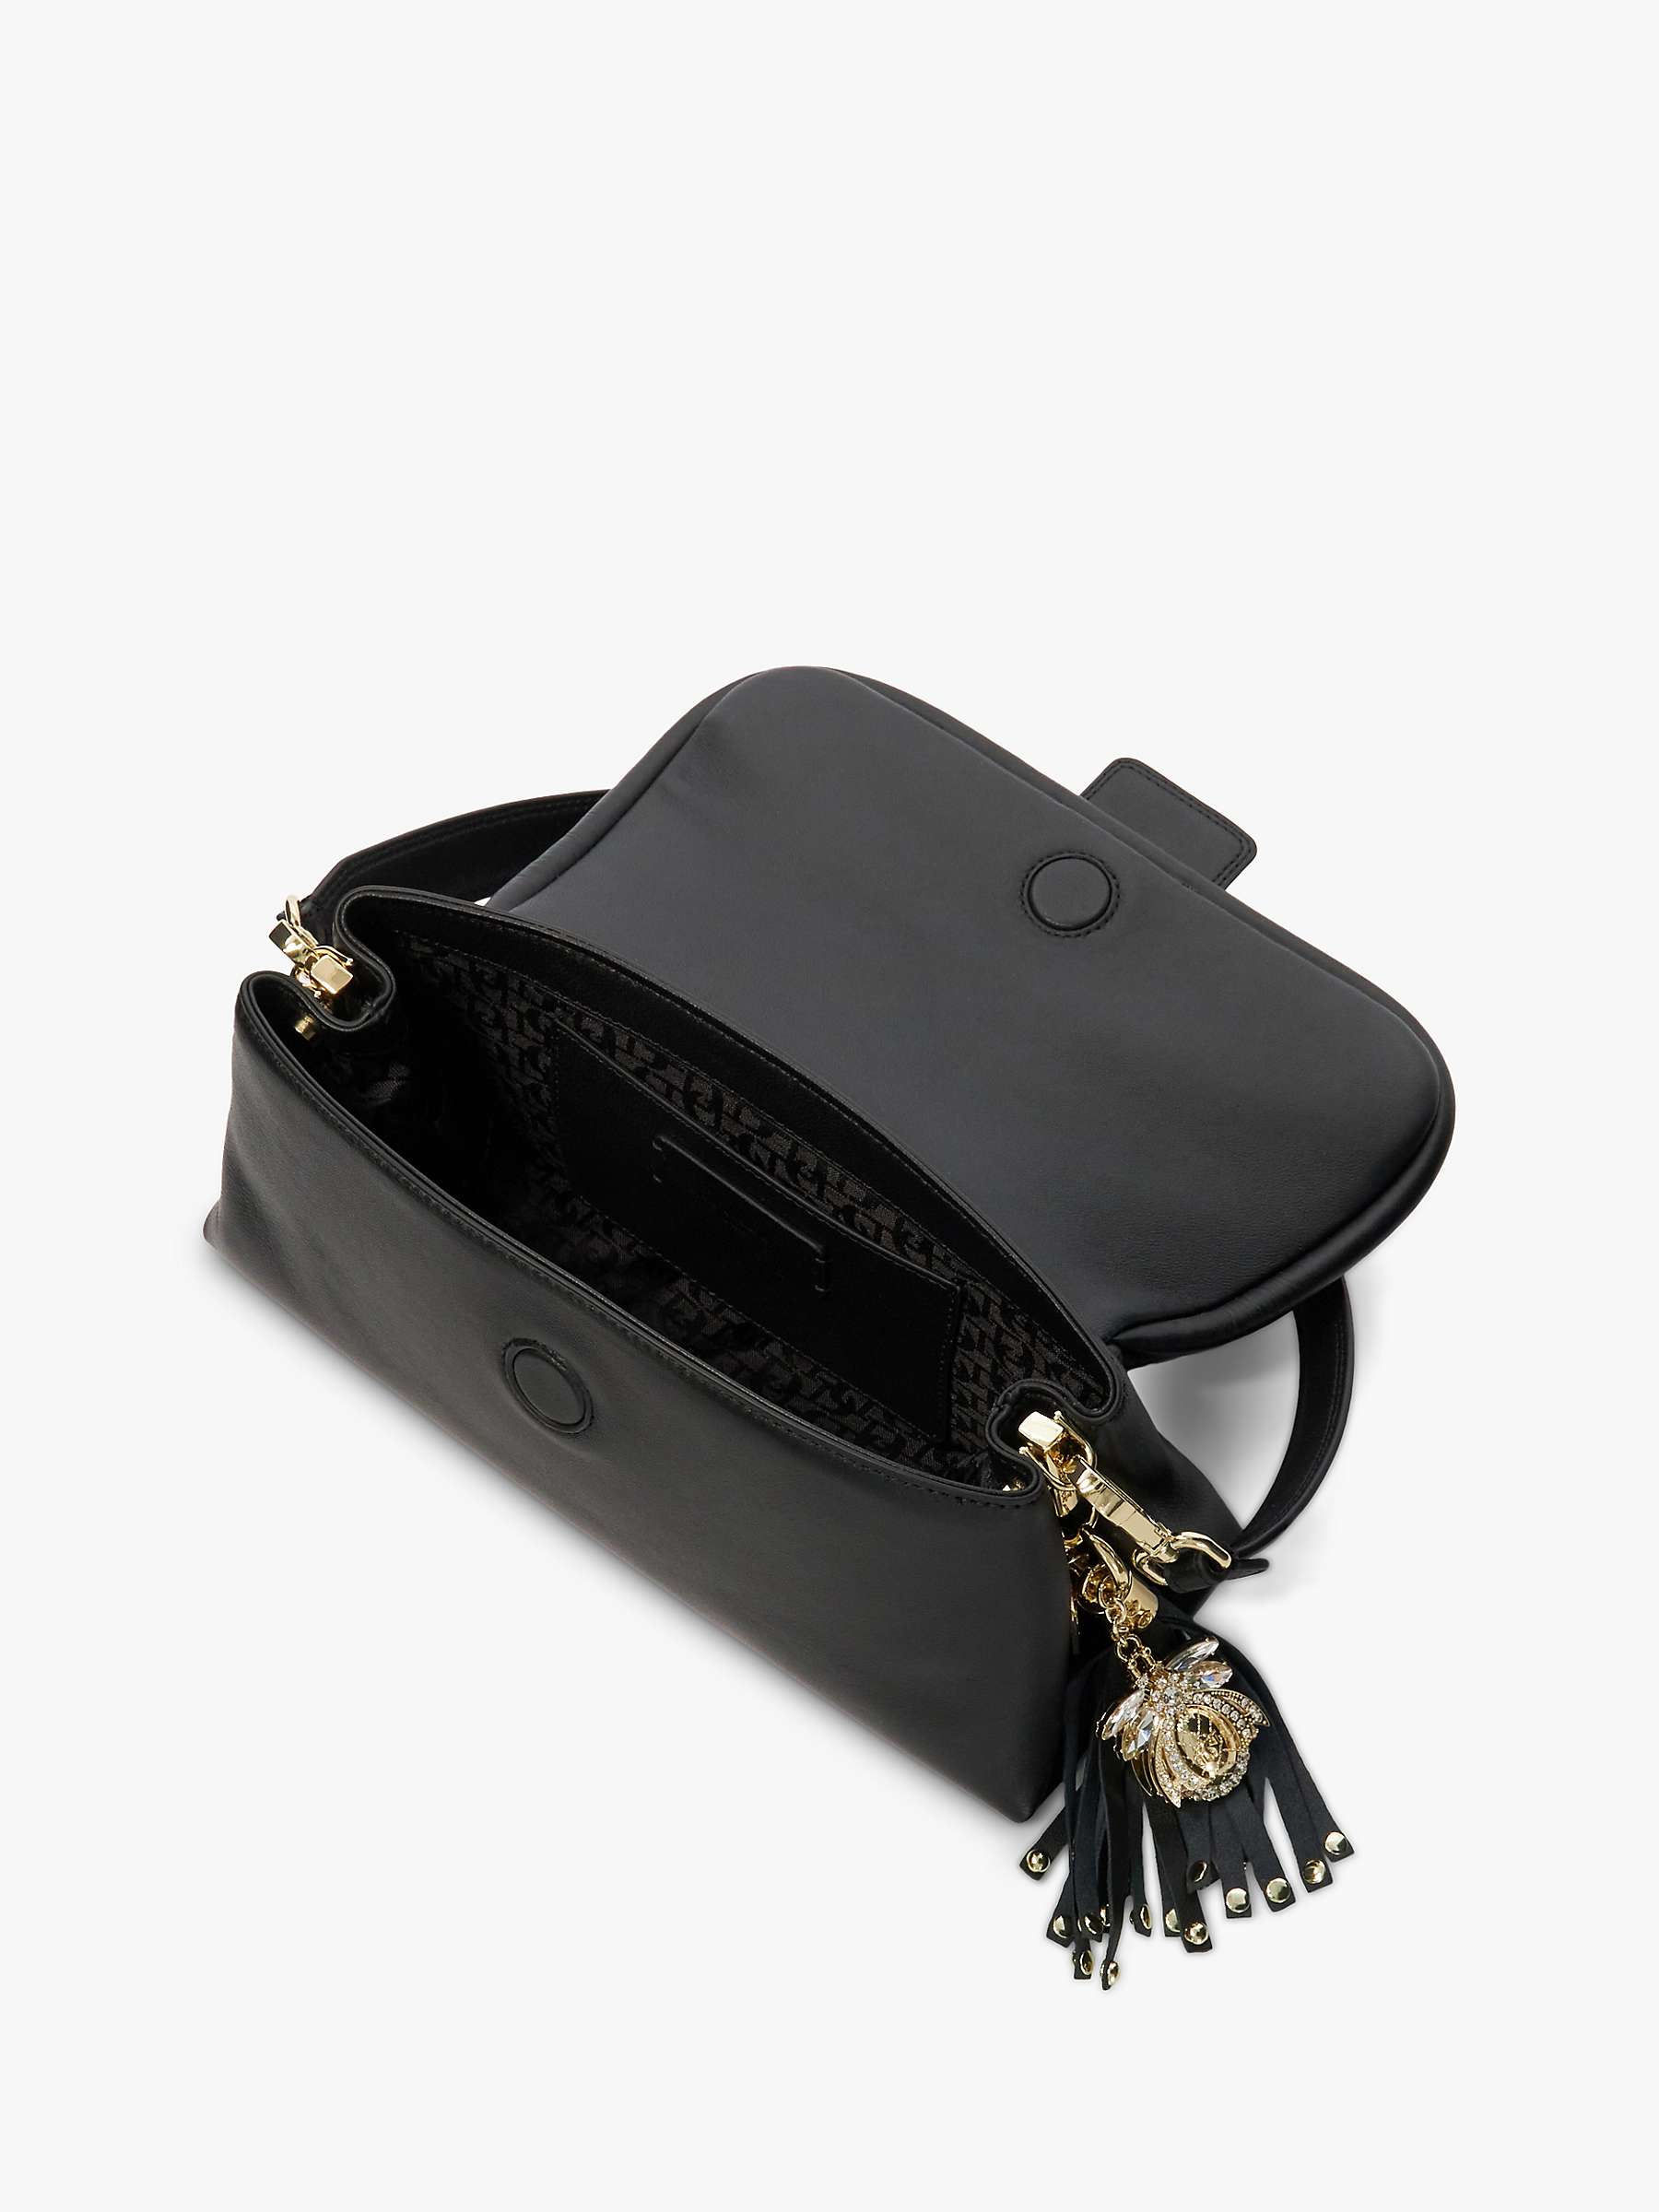 Buy Dune Chelsea Leather Shoulder Bag Online at johnlewis.com